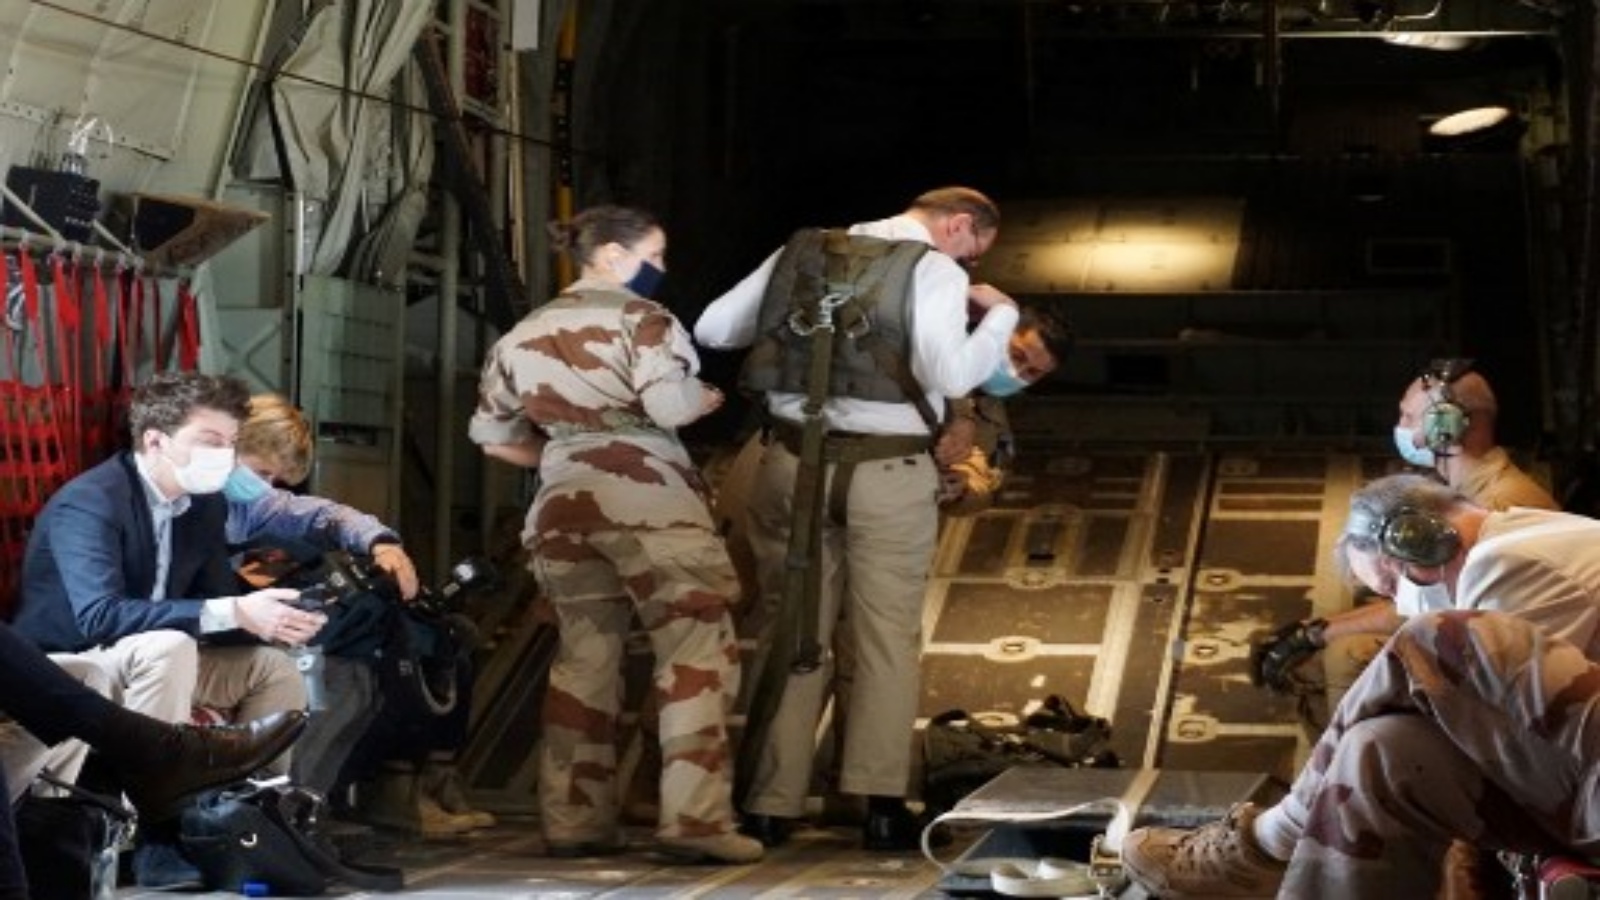 رئيس الوزراء الفرنسي جان كاستكس (واقفًا يرتدي قميصًا أبيض) تم تجهيزه من قبل جنود فرنسيين قبل رحلة جوية باتجاه فايا لارجو ، تشاد ، في 31 ديسمبر 2020 ، بعد قضاء ليلة رأس السنة مع القوات الفرنسية التي تخدم في مكافحة الإرهاب 